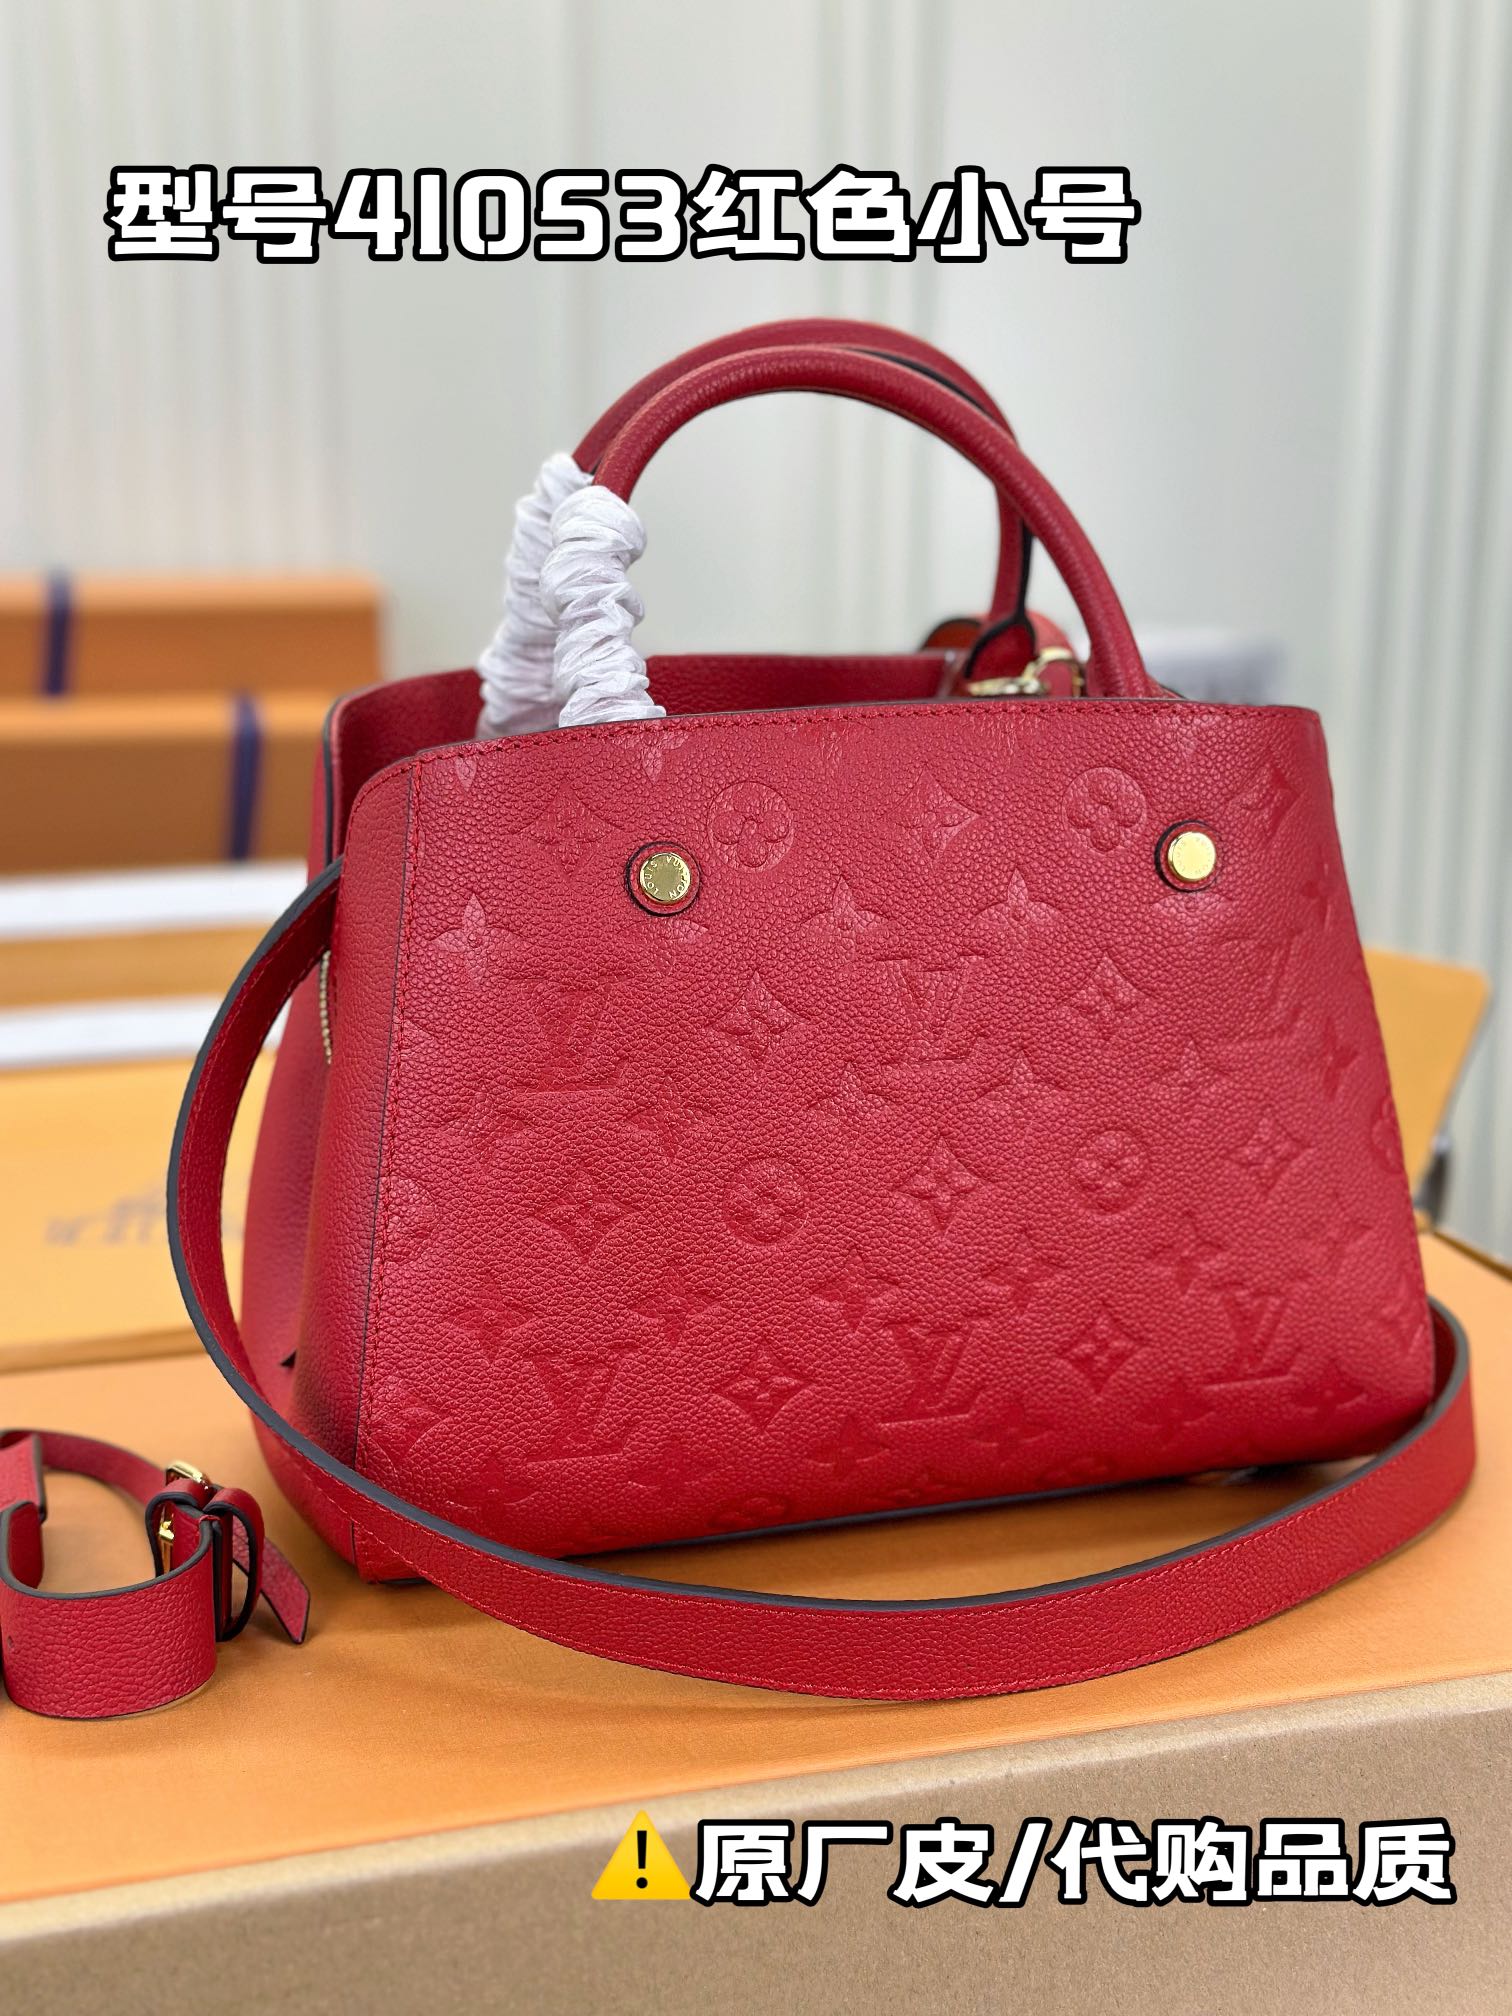 顶级原单M41053红色小巧精致的迷你款Montaigne手袋拥有多种携带方式是商务女士的理想便携包款其